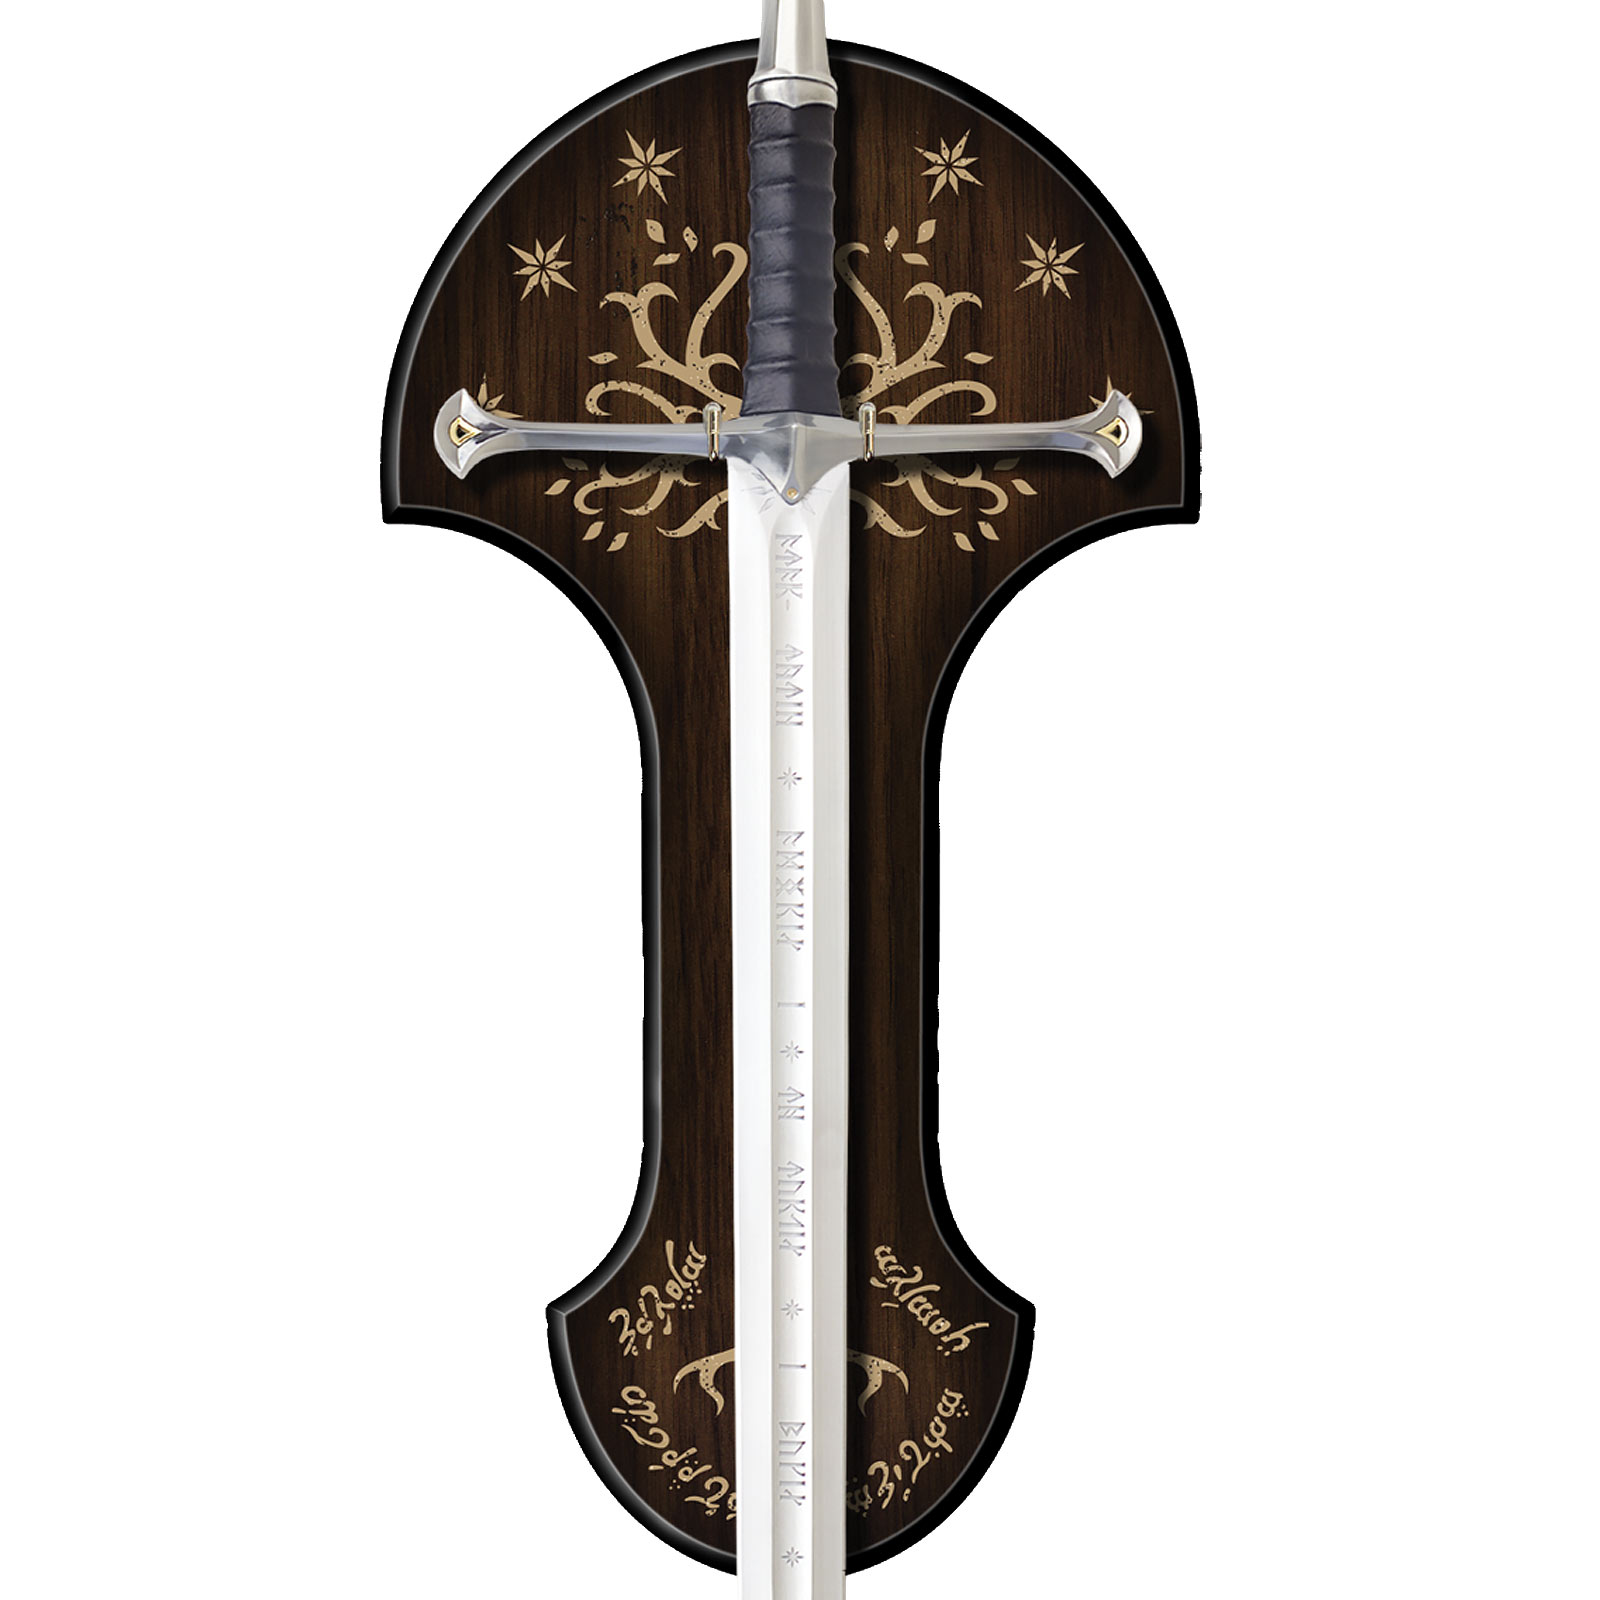 Schwert Anduril - Die Flamme des Westens